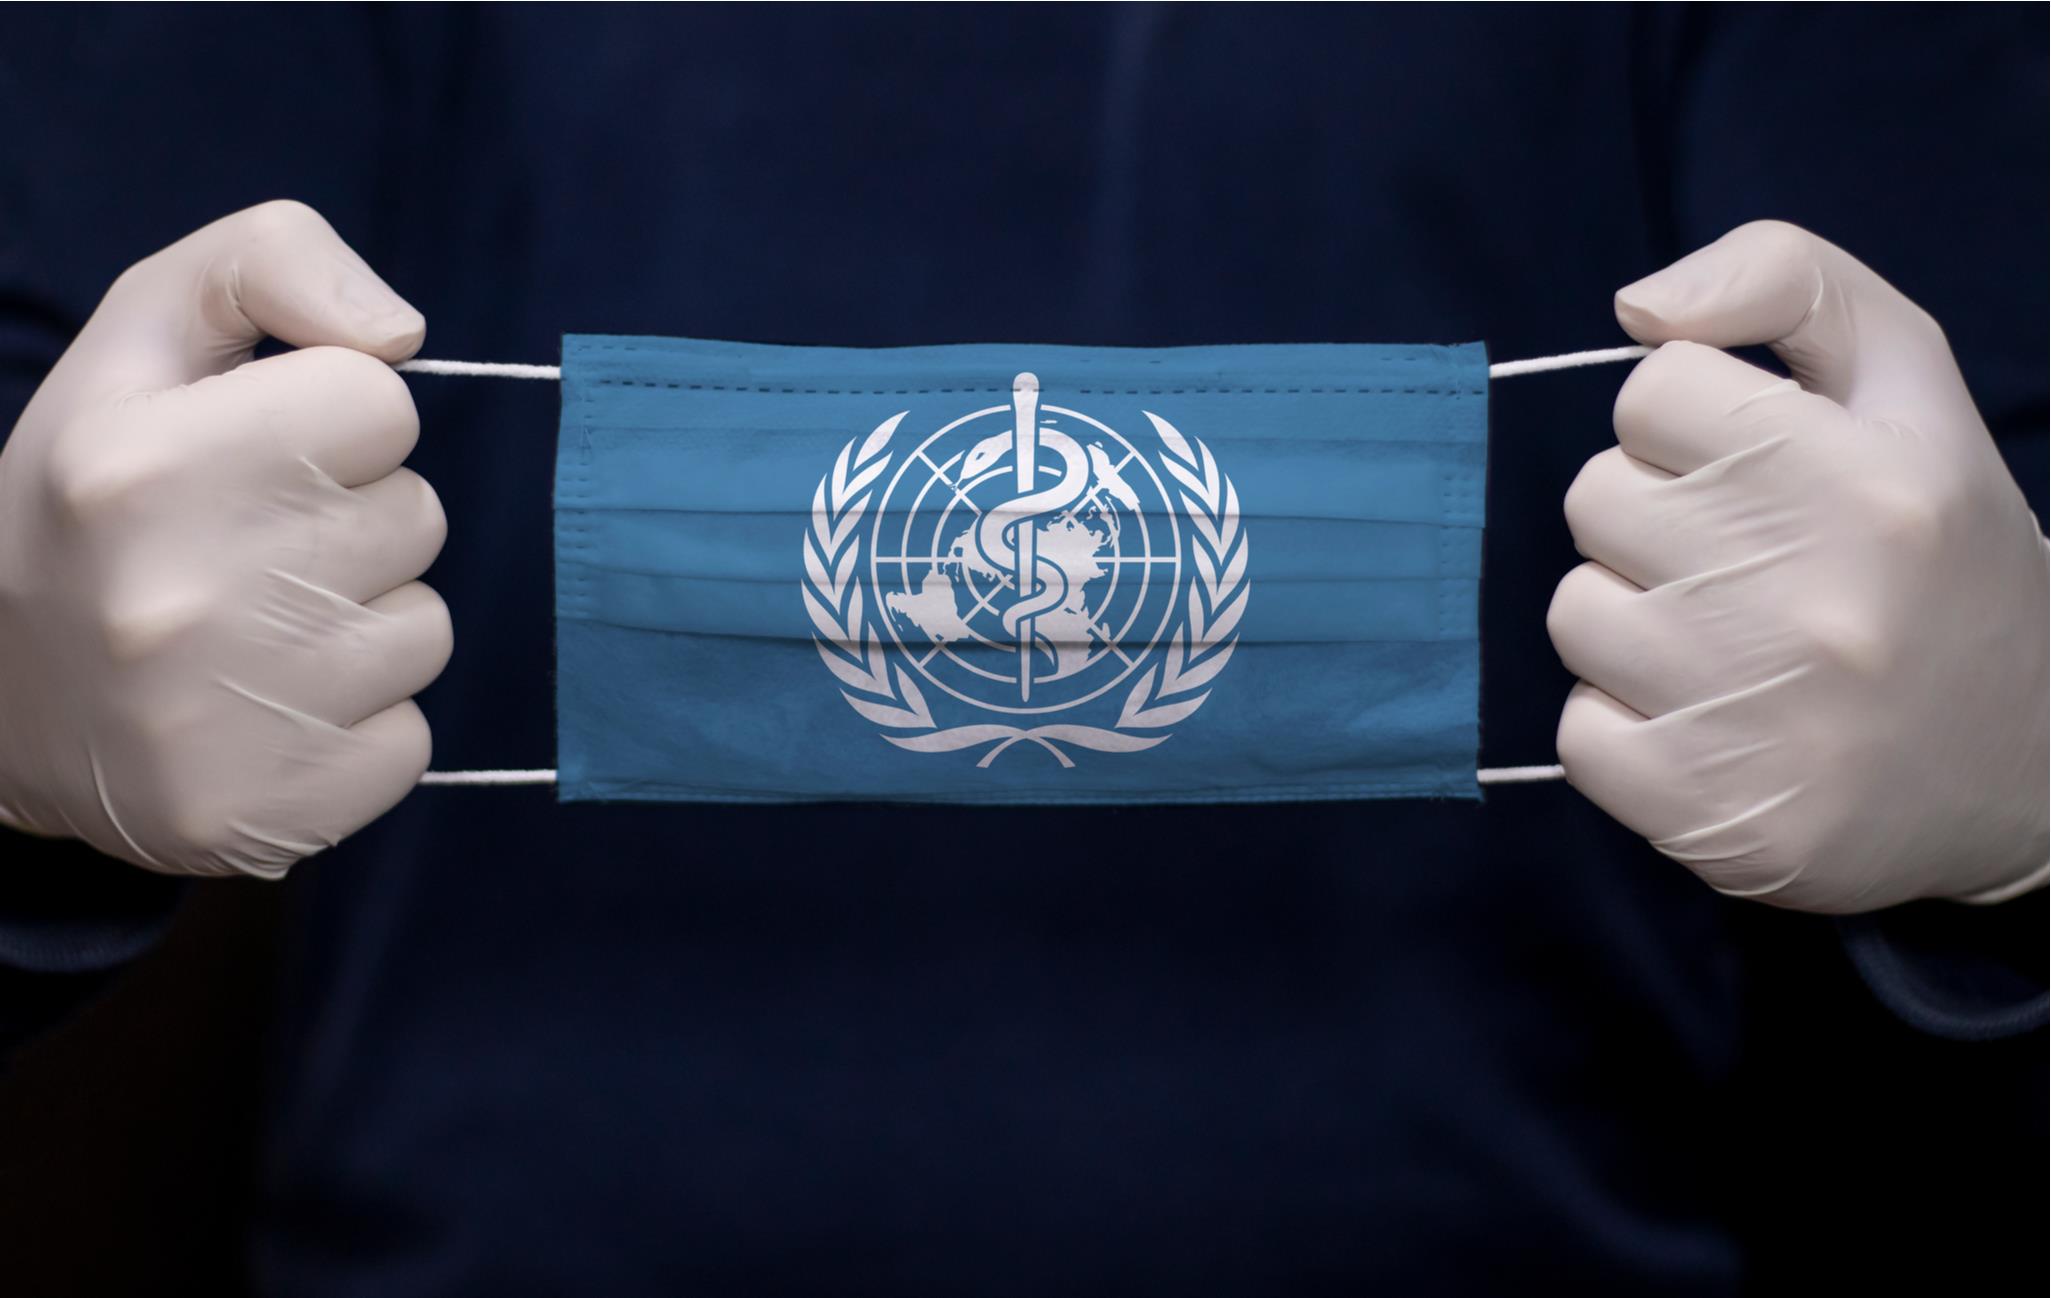 منظمة الصحة العالمية: جائحة كورونا لا تزال تمثل حالة طوارئ صحية على مستوى العالم